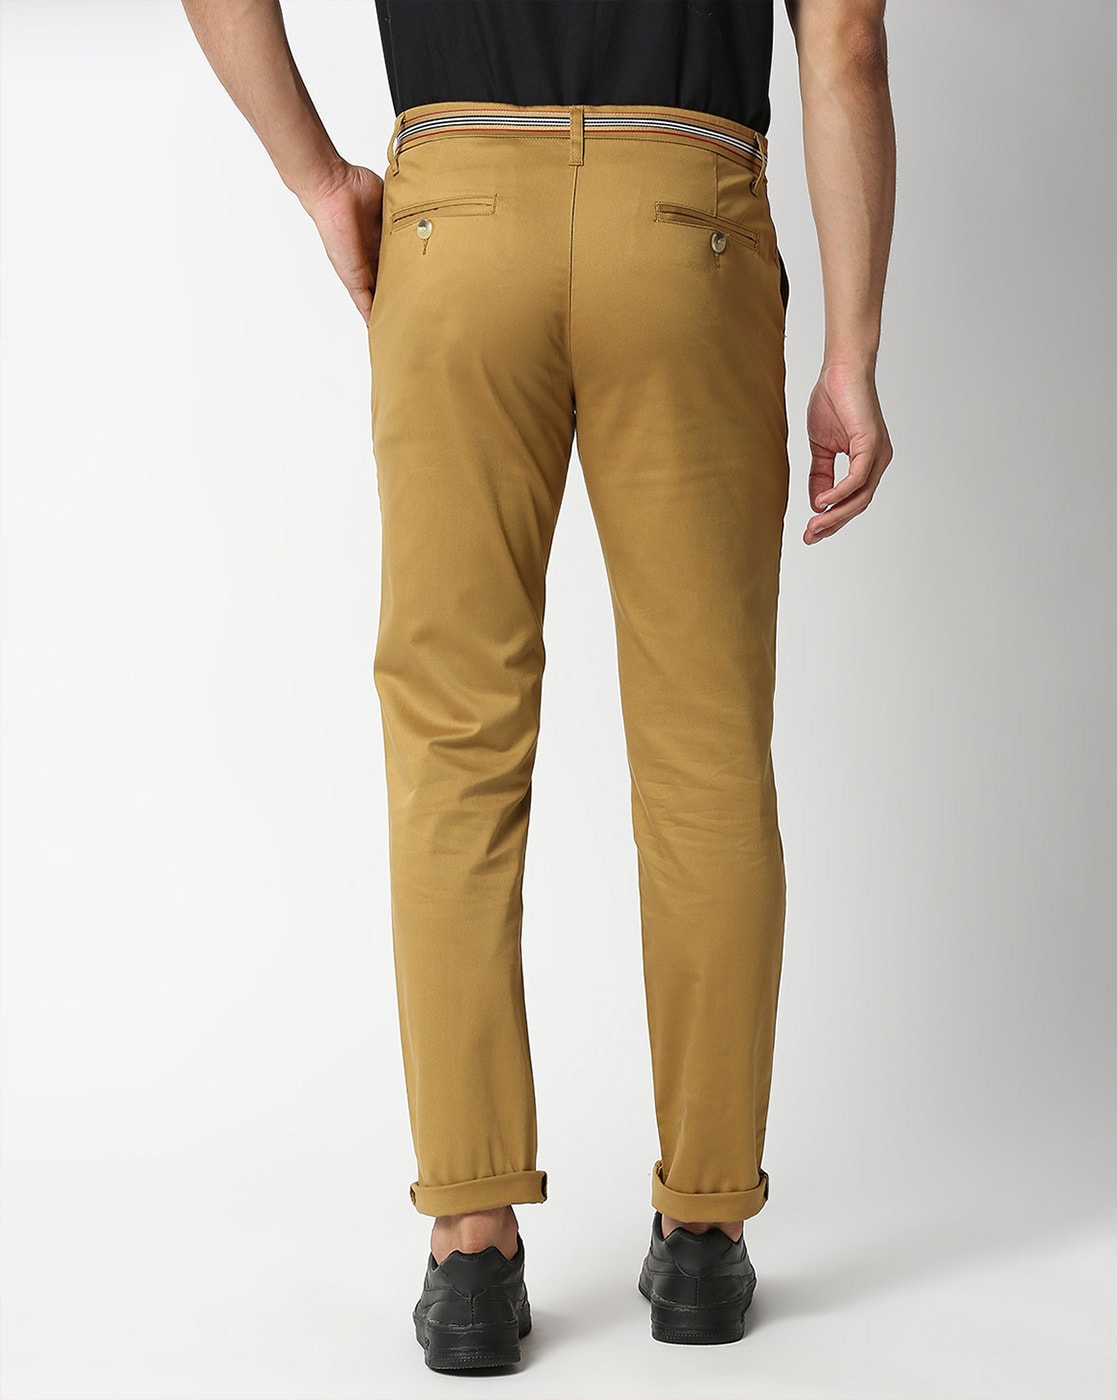 Buy Tan Trousers & Pants for Men by ECKO UNLTD Online | Ajio.com